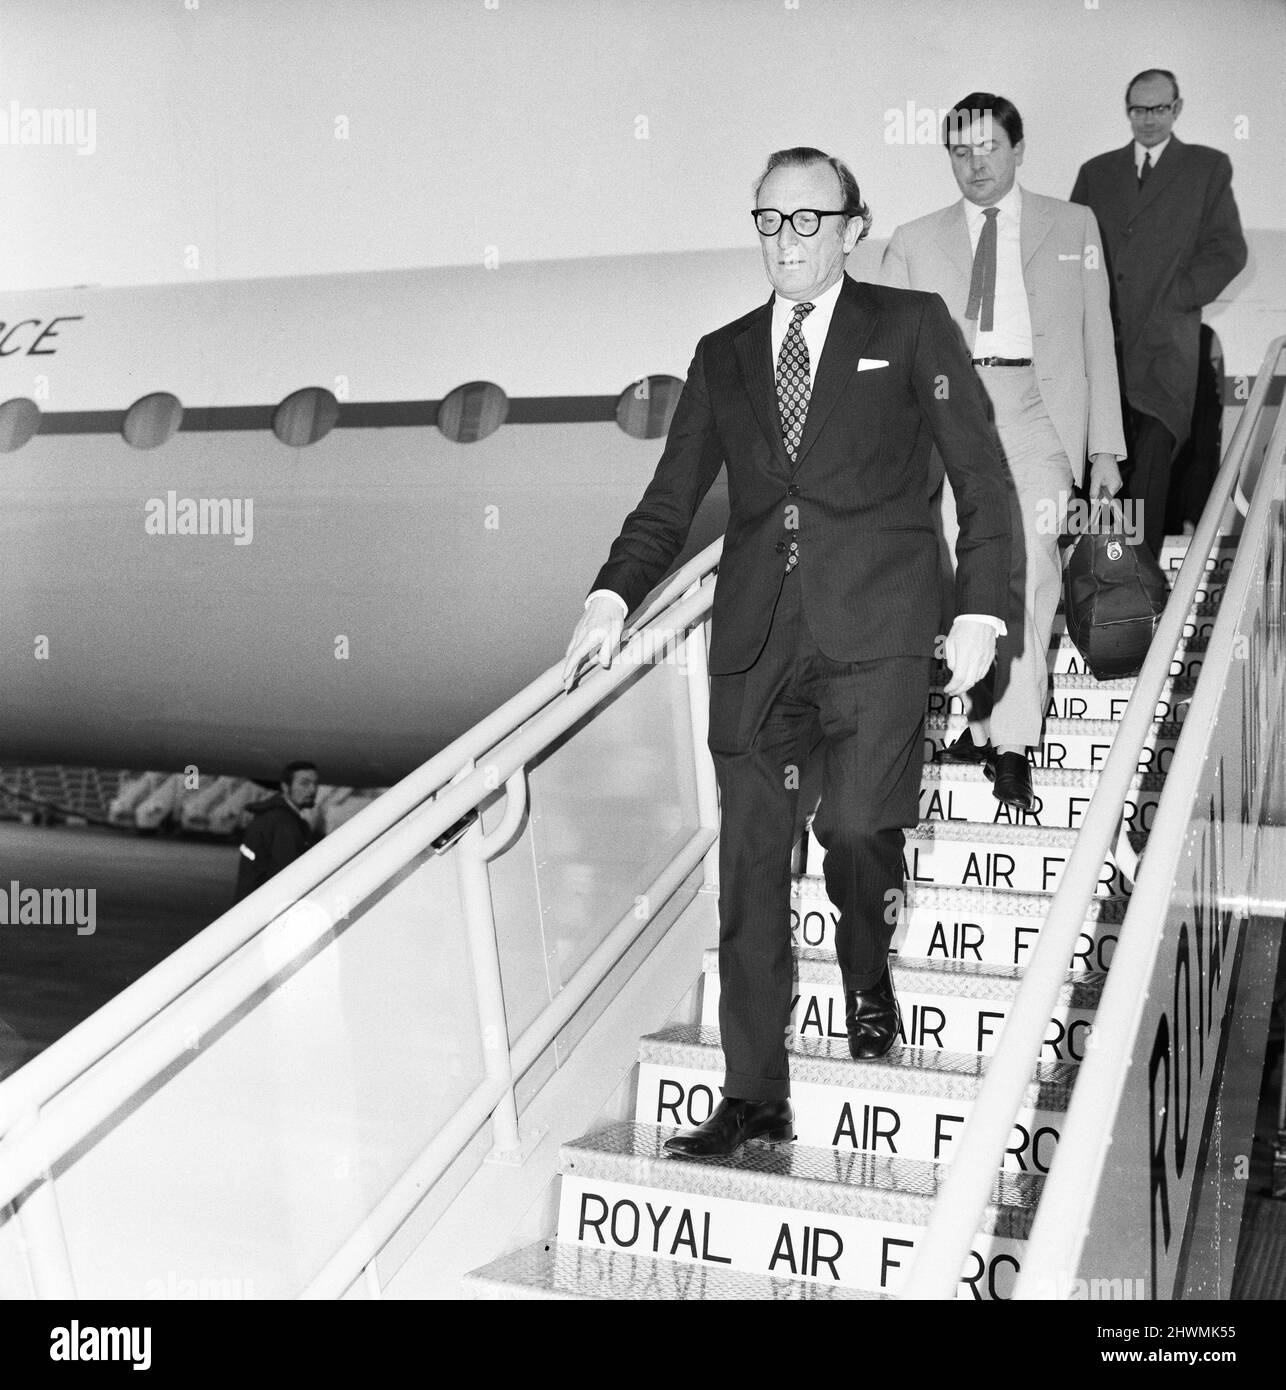 Il Segretario di Stato per la Difesa Lord Carrington arriva all'aeroporto di Heathrow da Roma dove ha avuto colloqui con il primo Ministro Dom Mintoff di Malta durante la crisi in corso. 21st gennaio 1972. Foto Stock